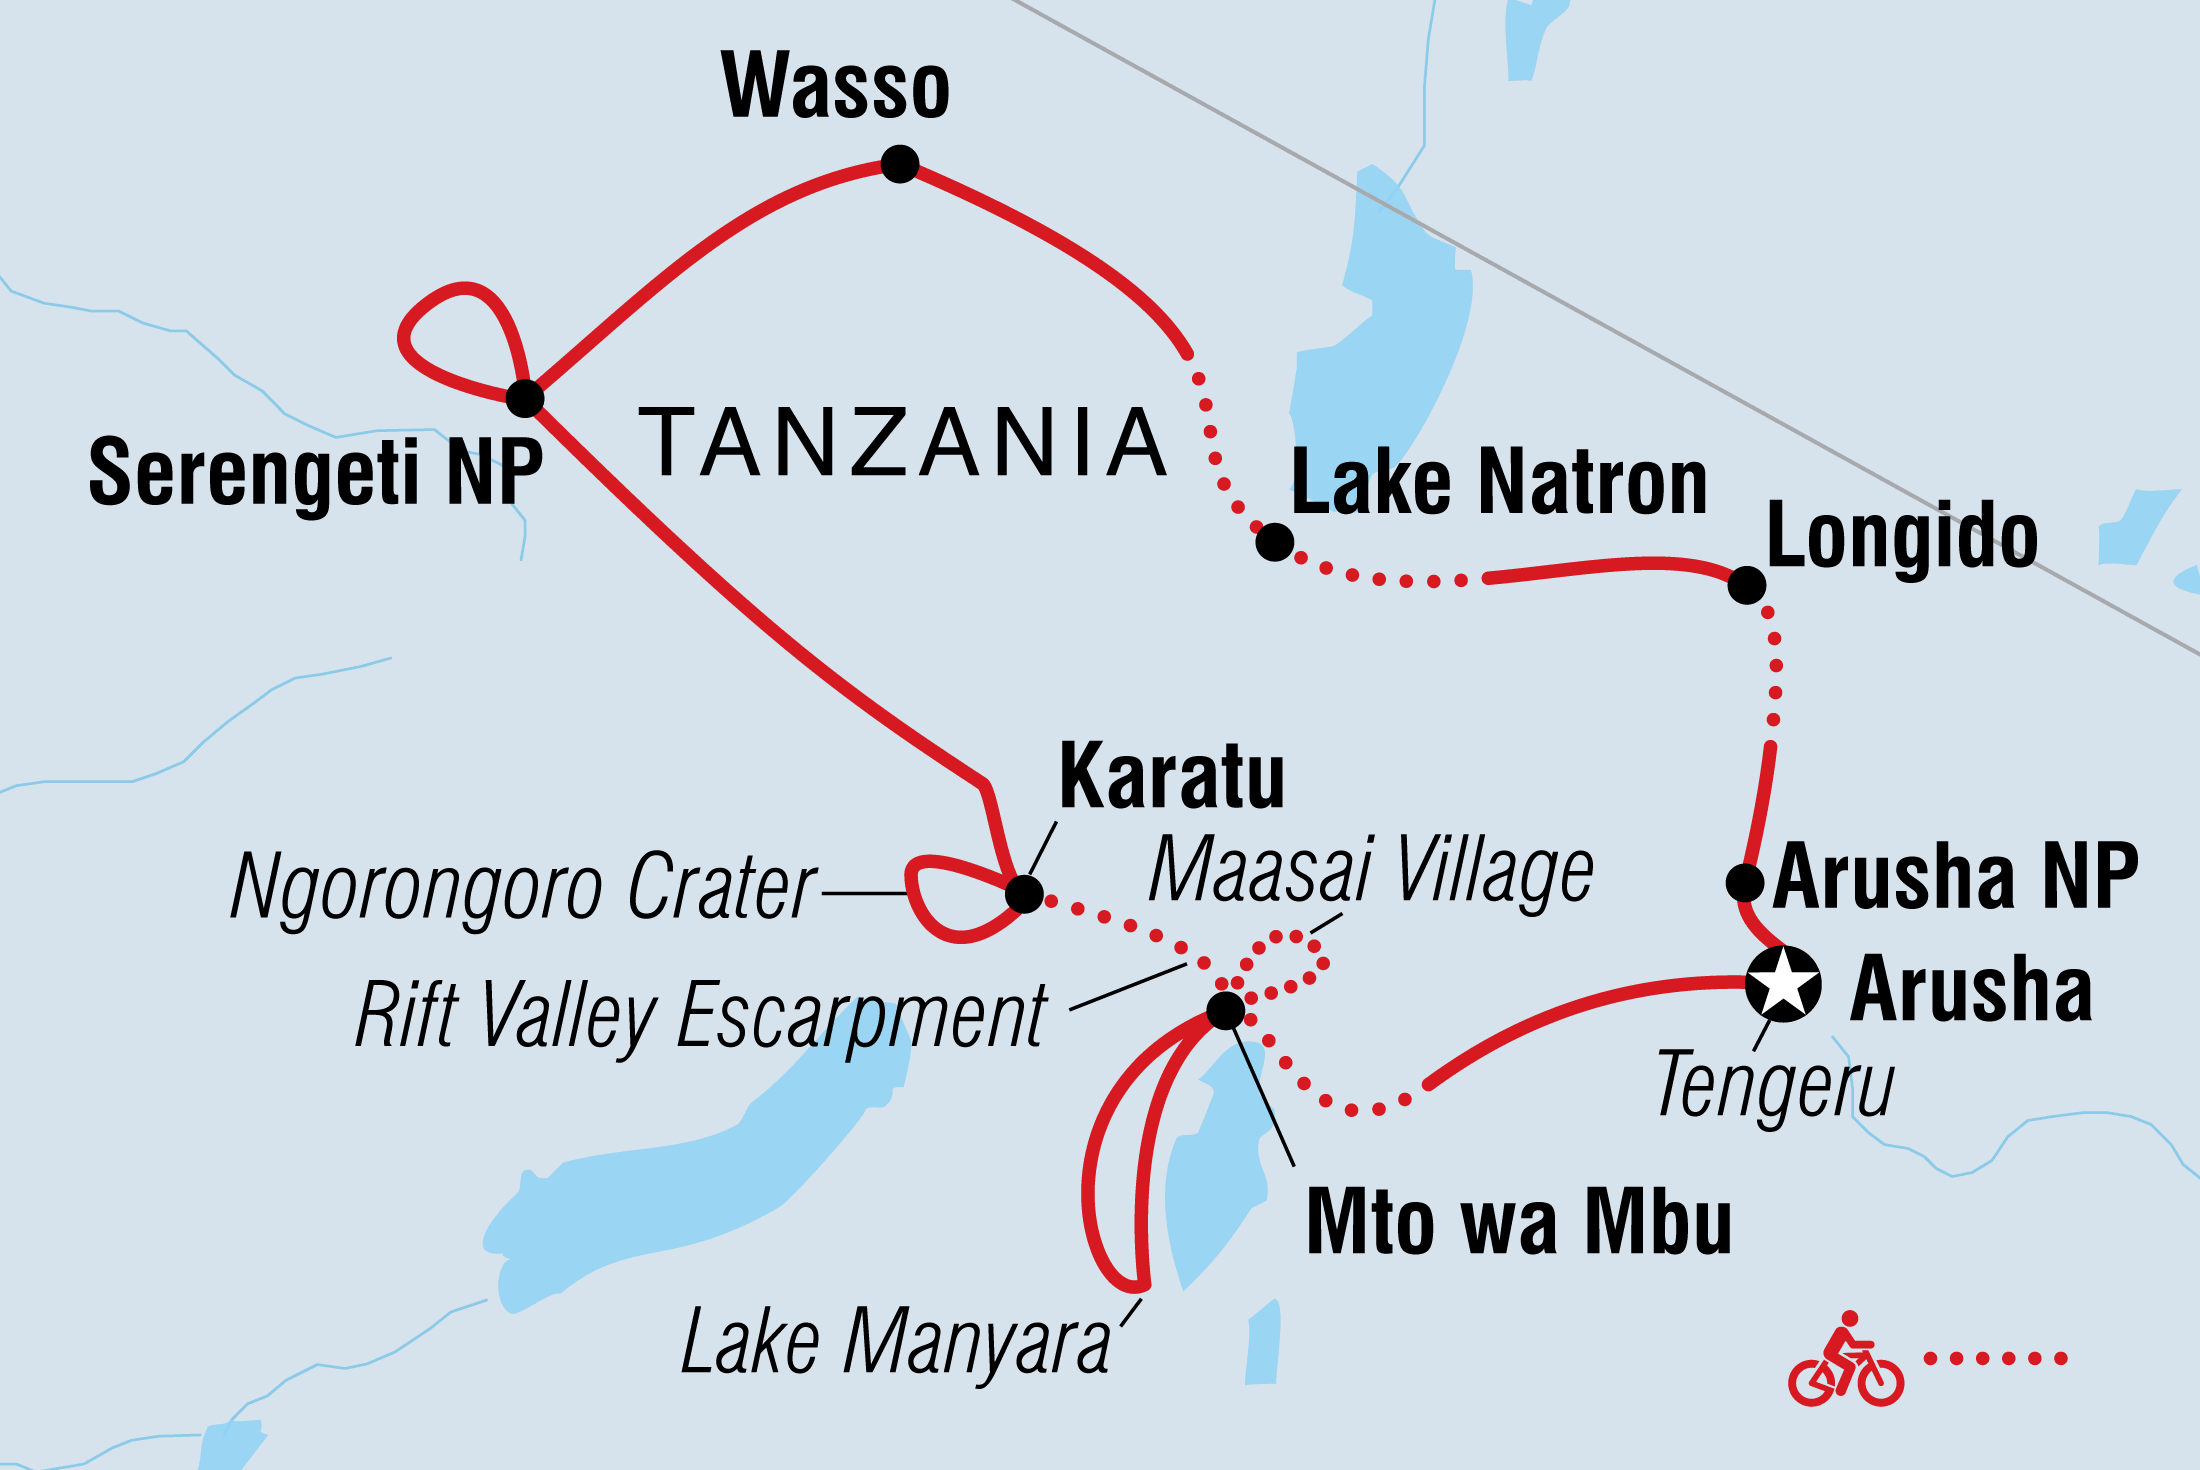 Cycle Tanzania